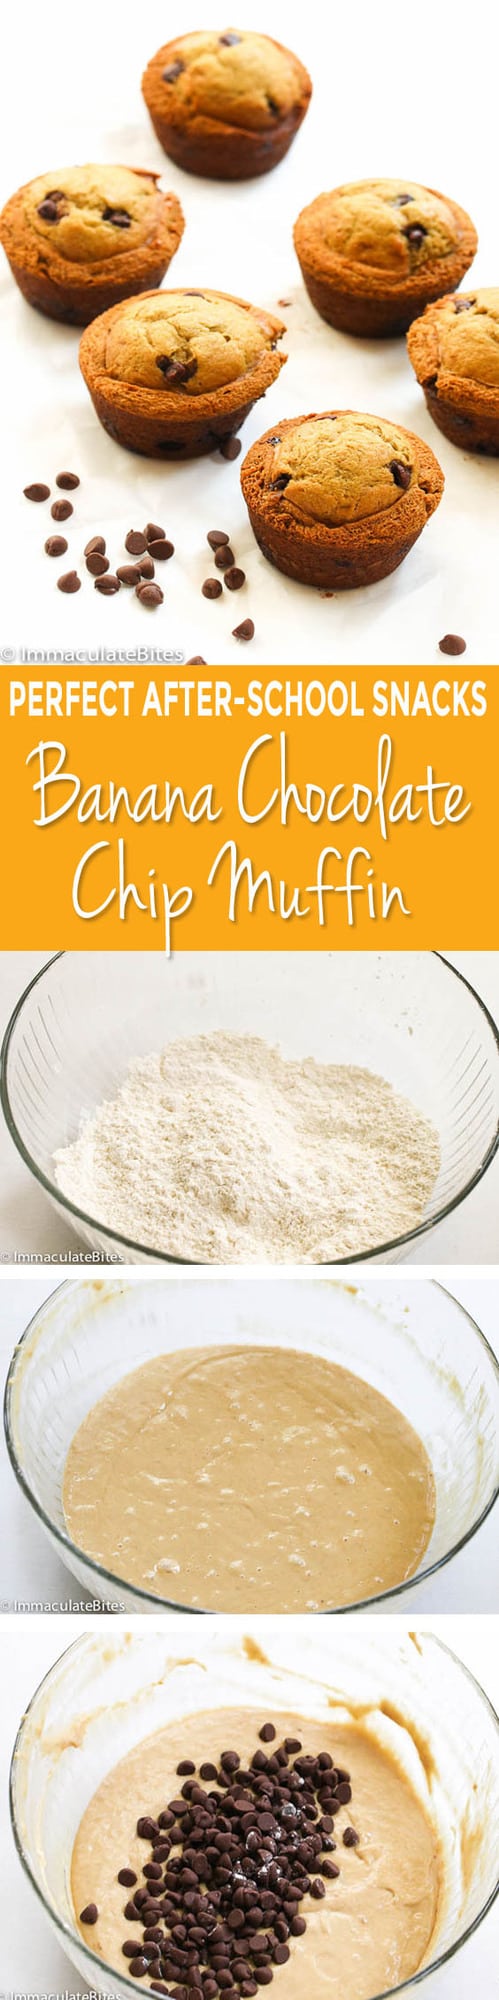 banana chocolate chip muffin